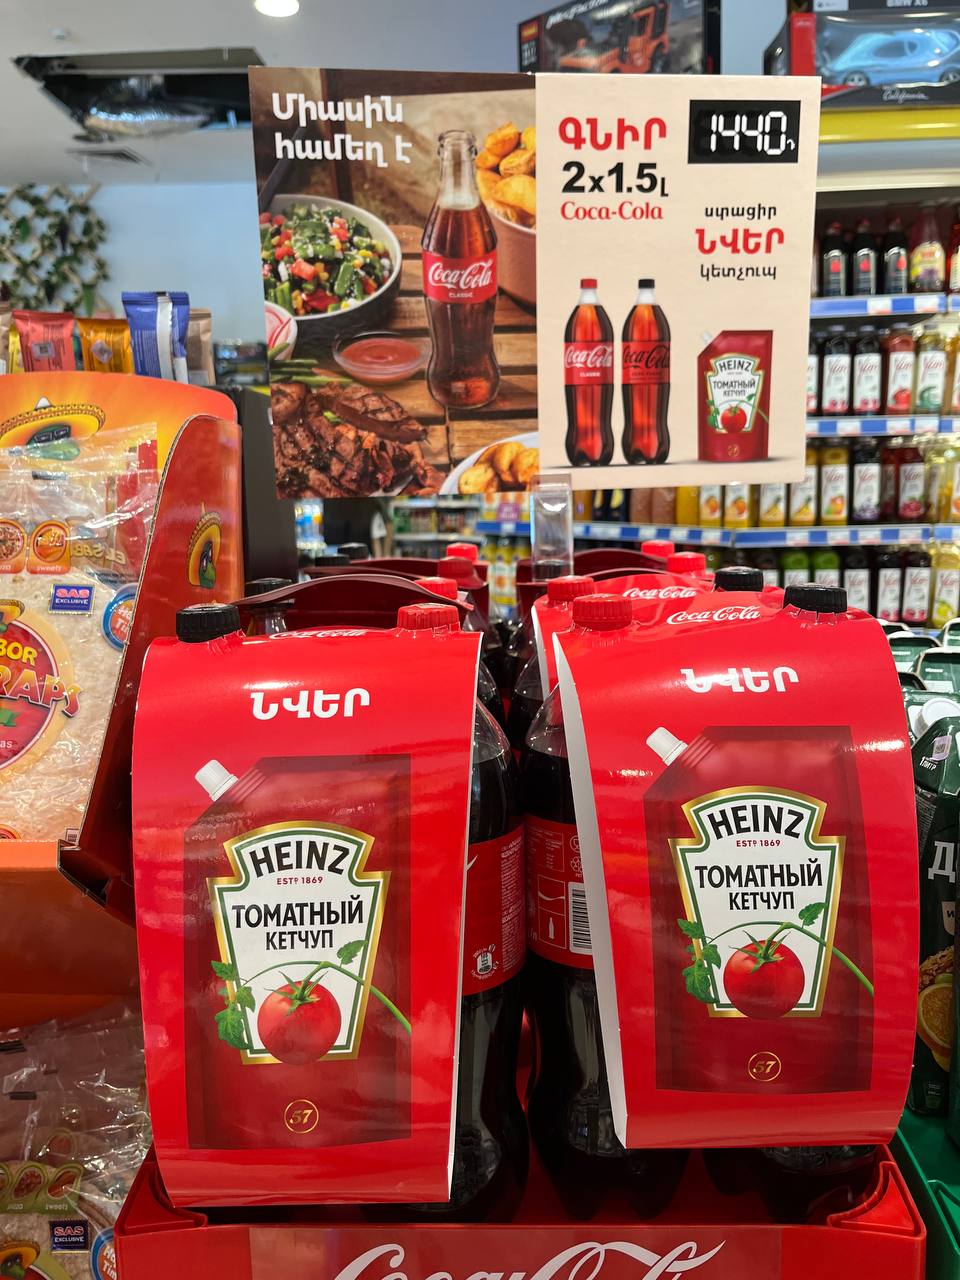 Иногда в продуктовых можно встретить интересные акции. Как вам набор кола + кетчуп?